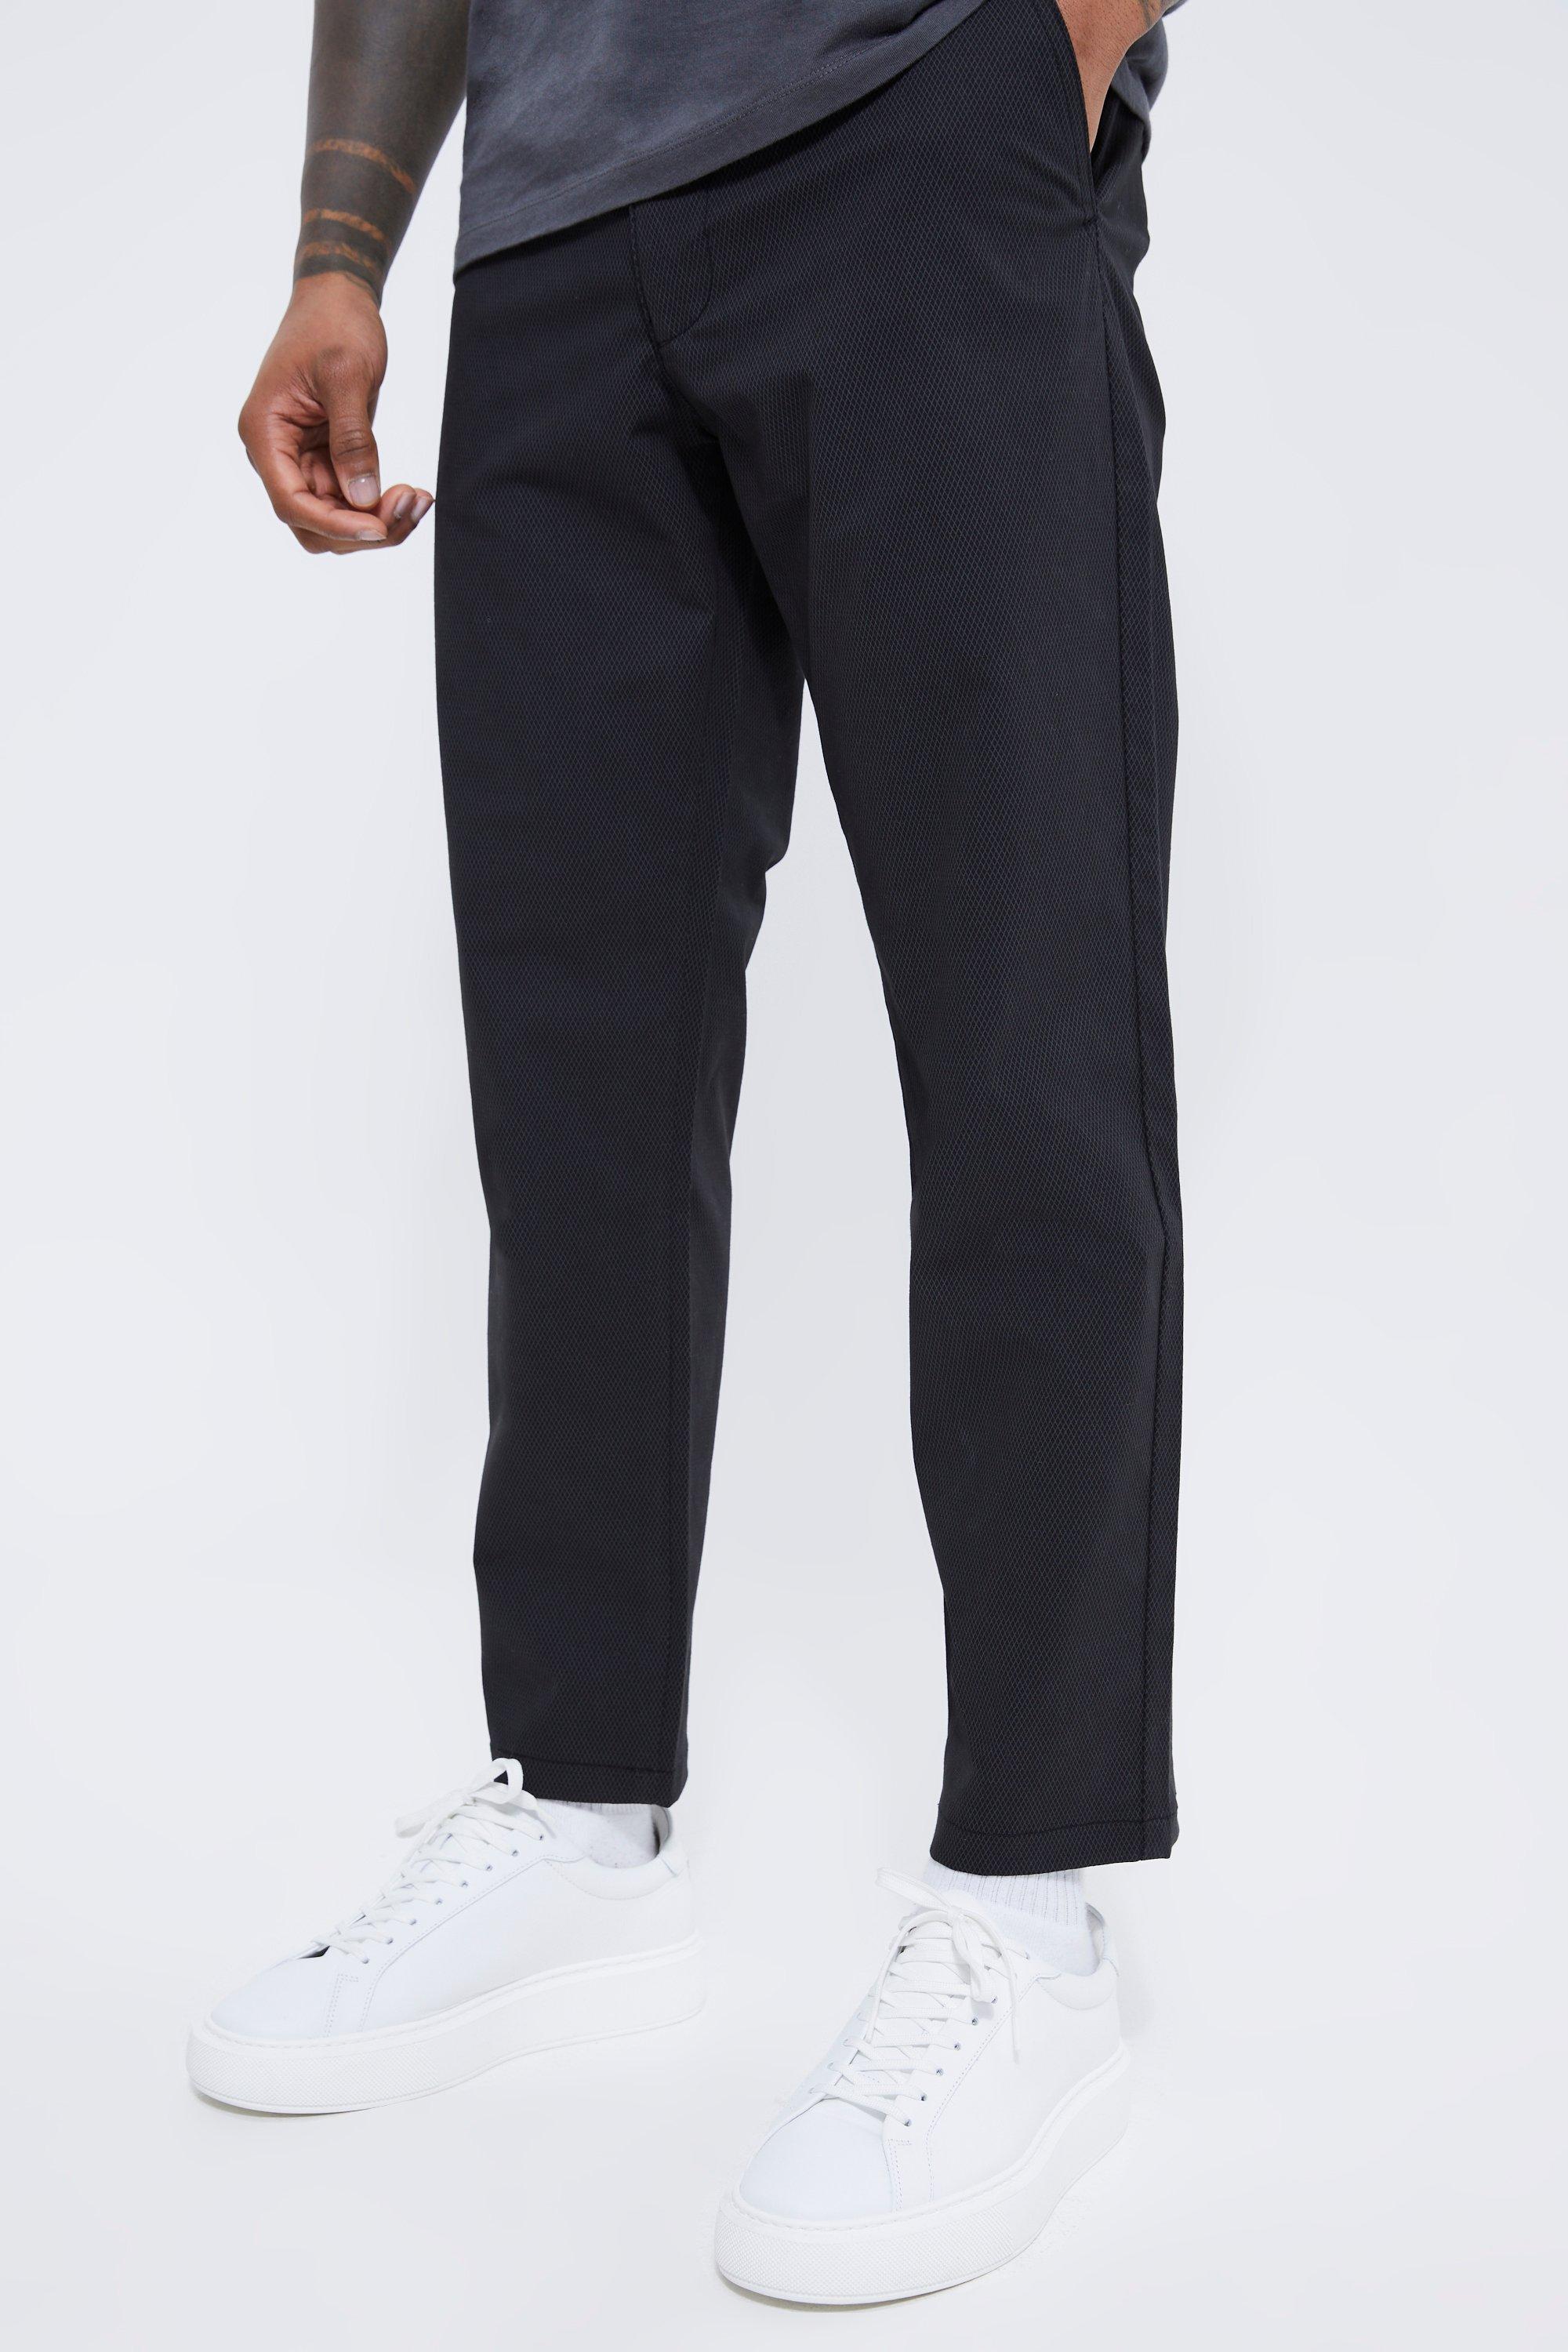 pantalon chino court texturé homme - noir - 28, noir